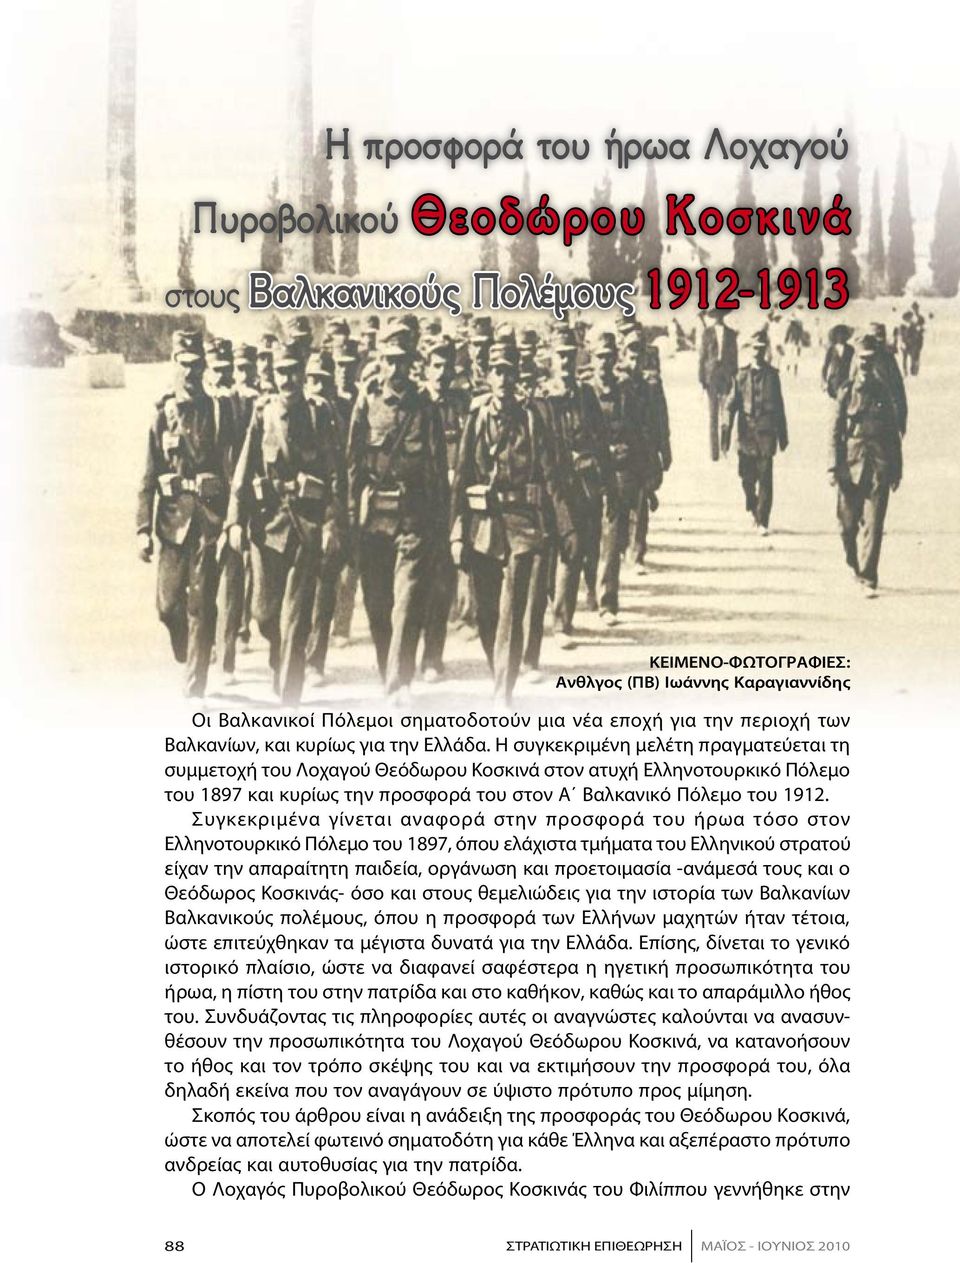 Η συγκεκριμένη μελέτη πραγματεύεται τη συμμετοχή του Λοχαγού Θεόδωρου Κοσκινά στον ατυχή Ελληνοτουρκικό Πόλεμο του 1897 και κυρίως την προσφορά του στον Α Βαλκανικό Πόλεμο του 1912.